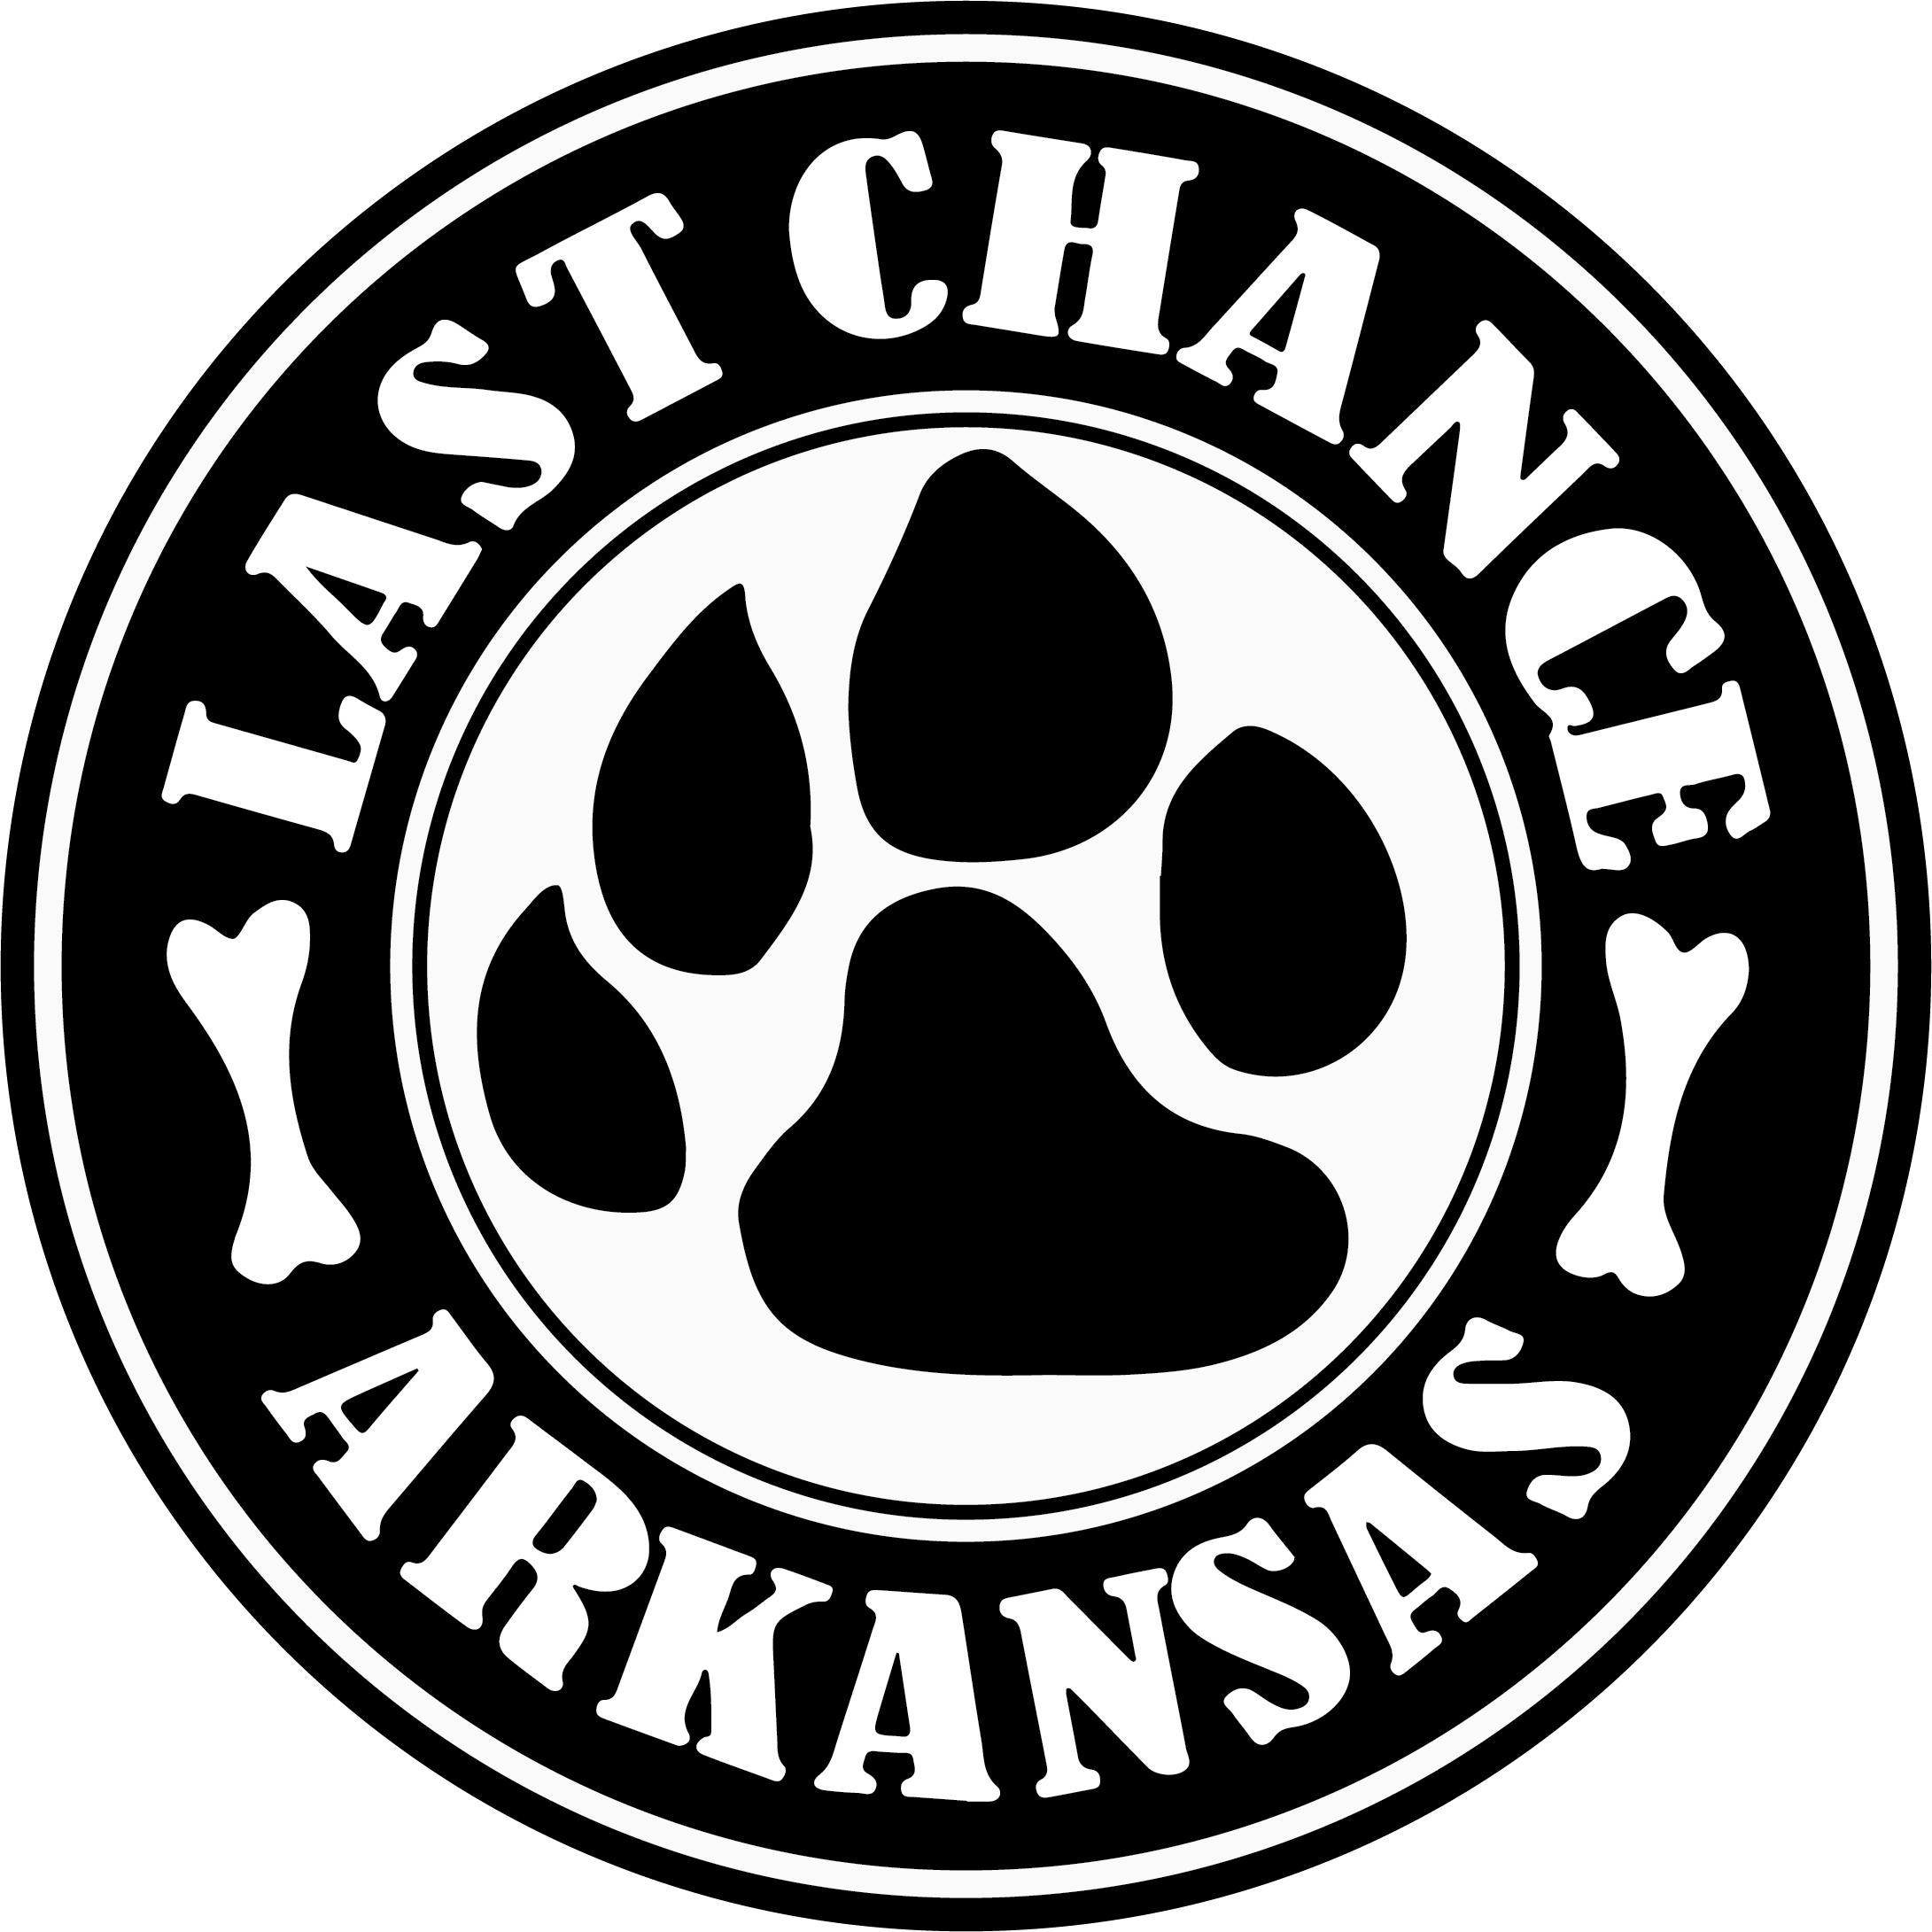 Last Chance Arkansas